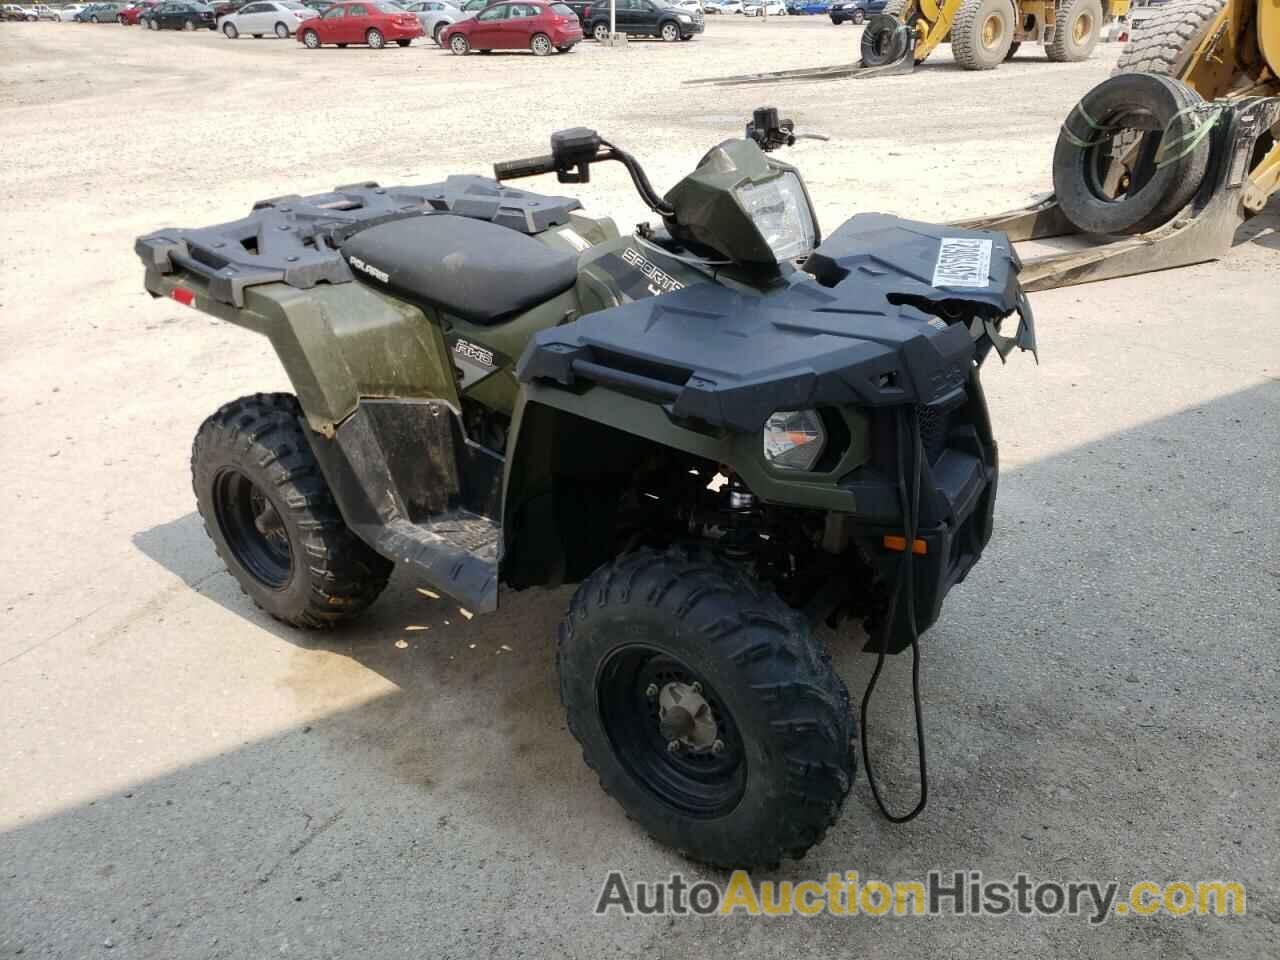 2016 POLARIS ATV 450 H.O., 4XASEA452GA595886